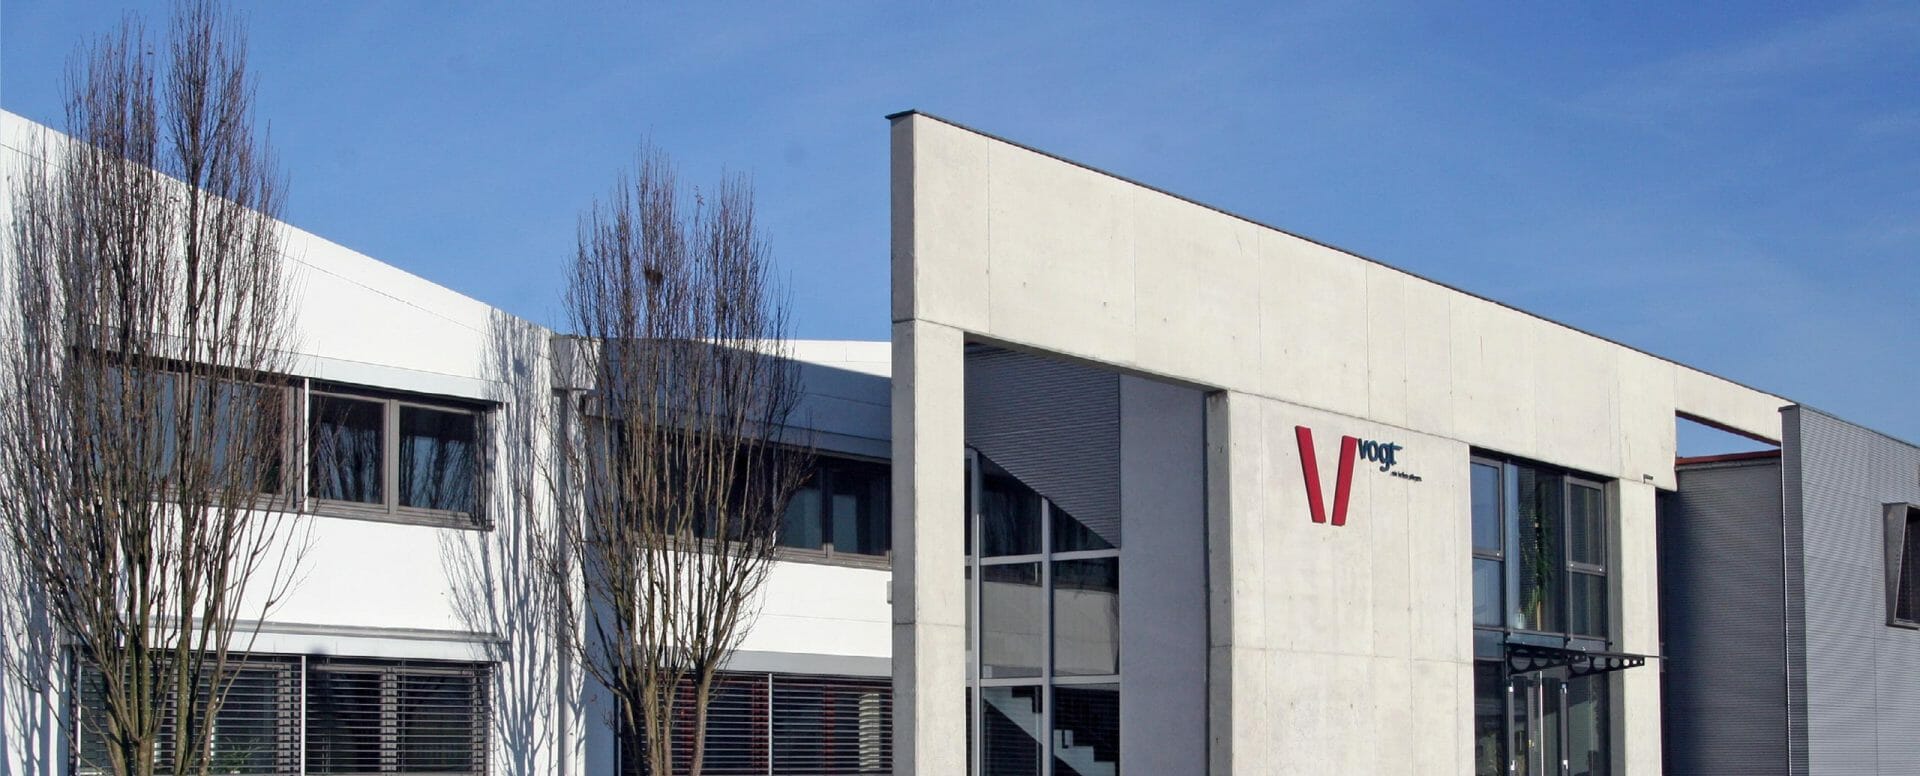 Firmenzentrale der Vogt GmbH in Steinheim